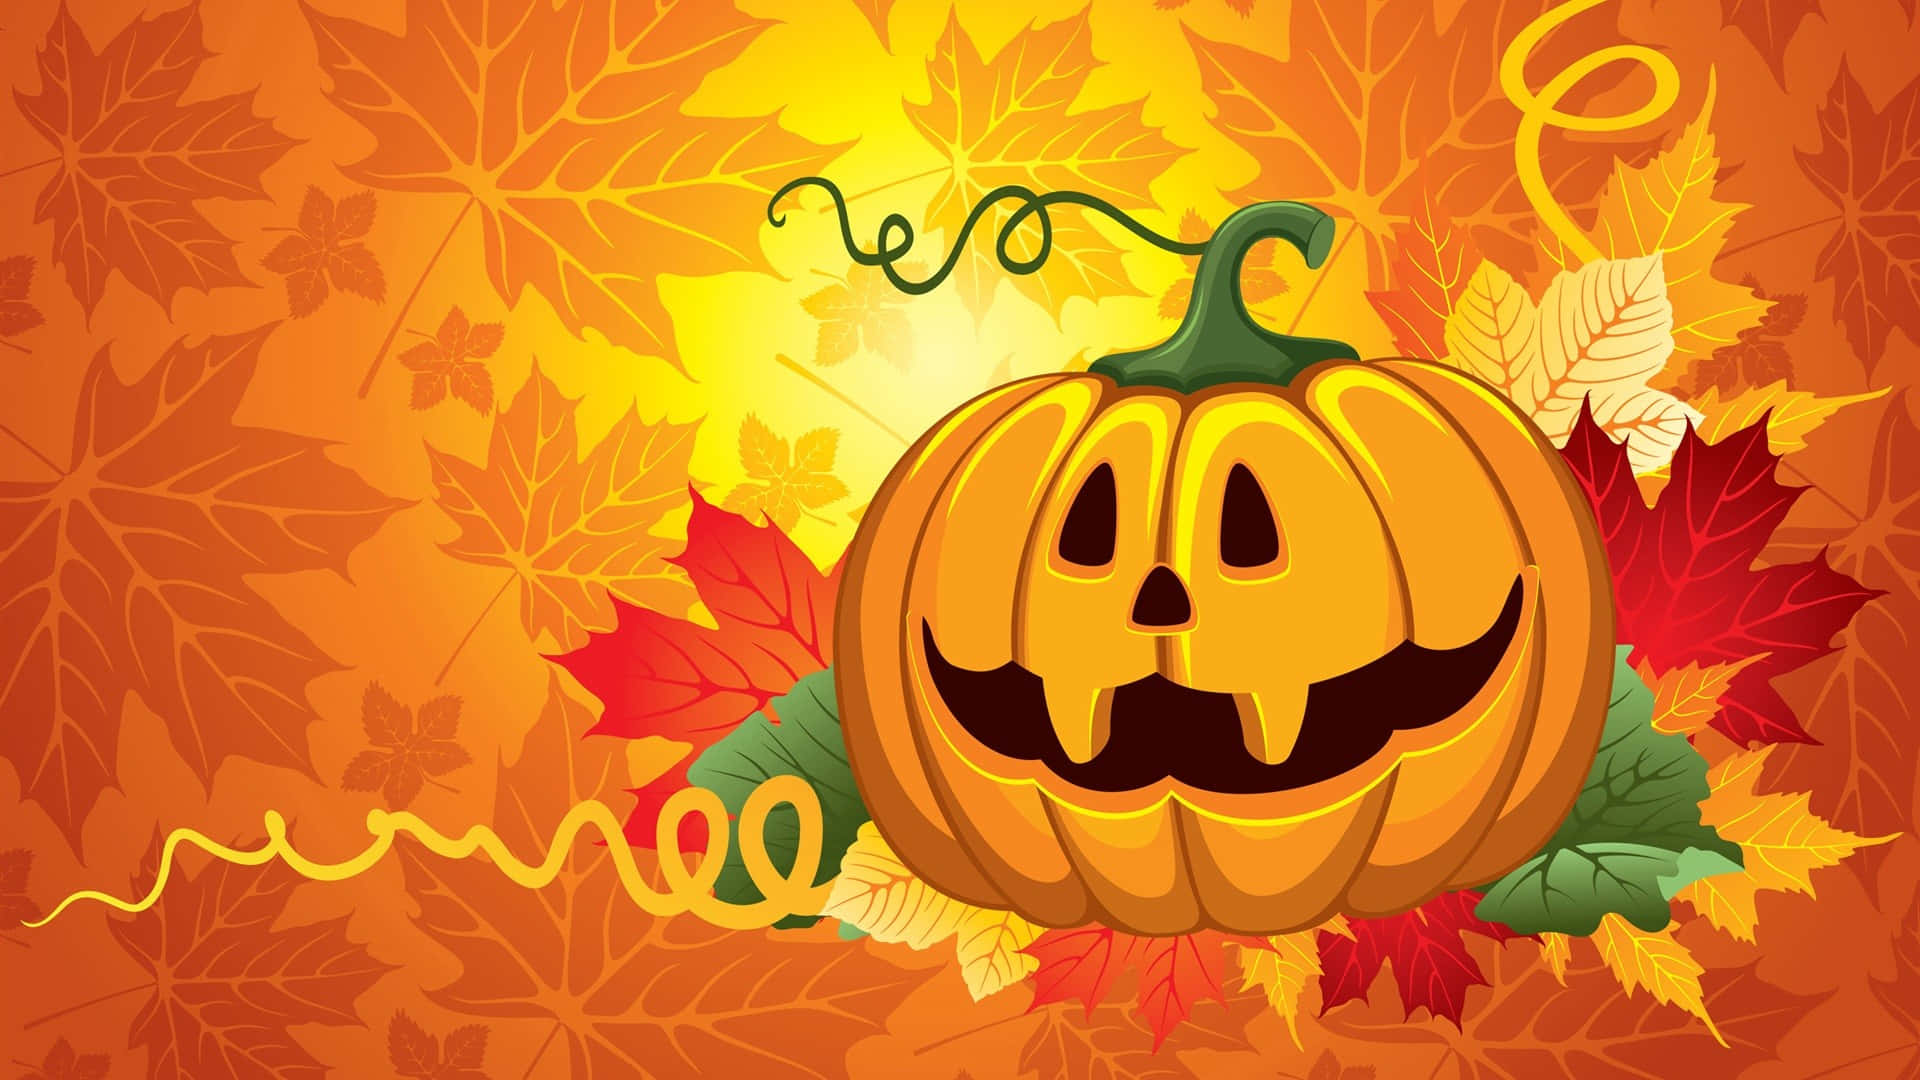 Spooky yet Sweet - A Cute Halloween